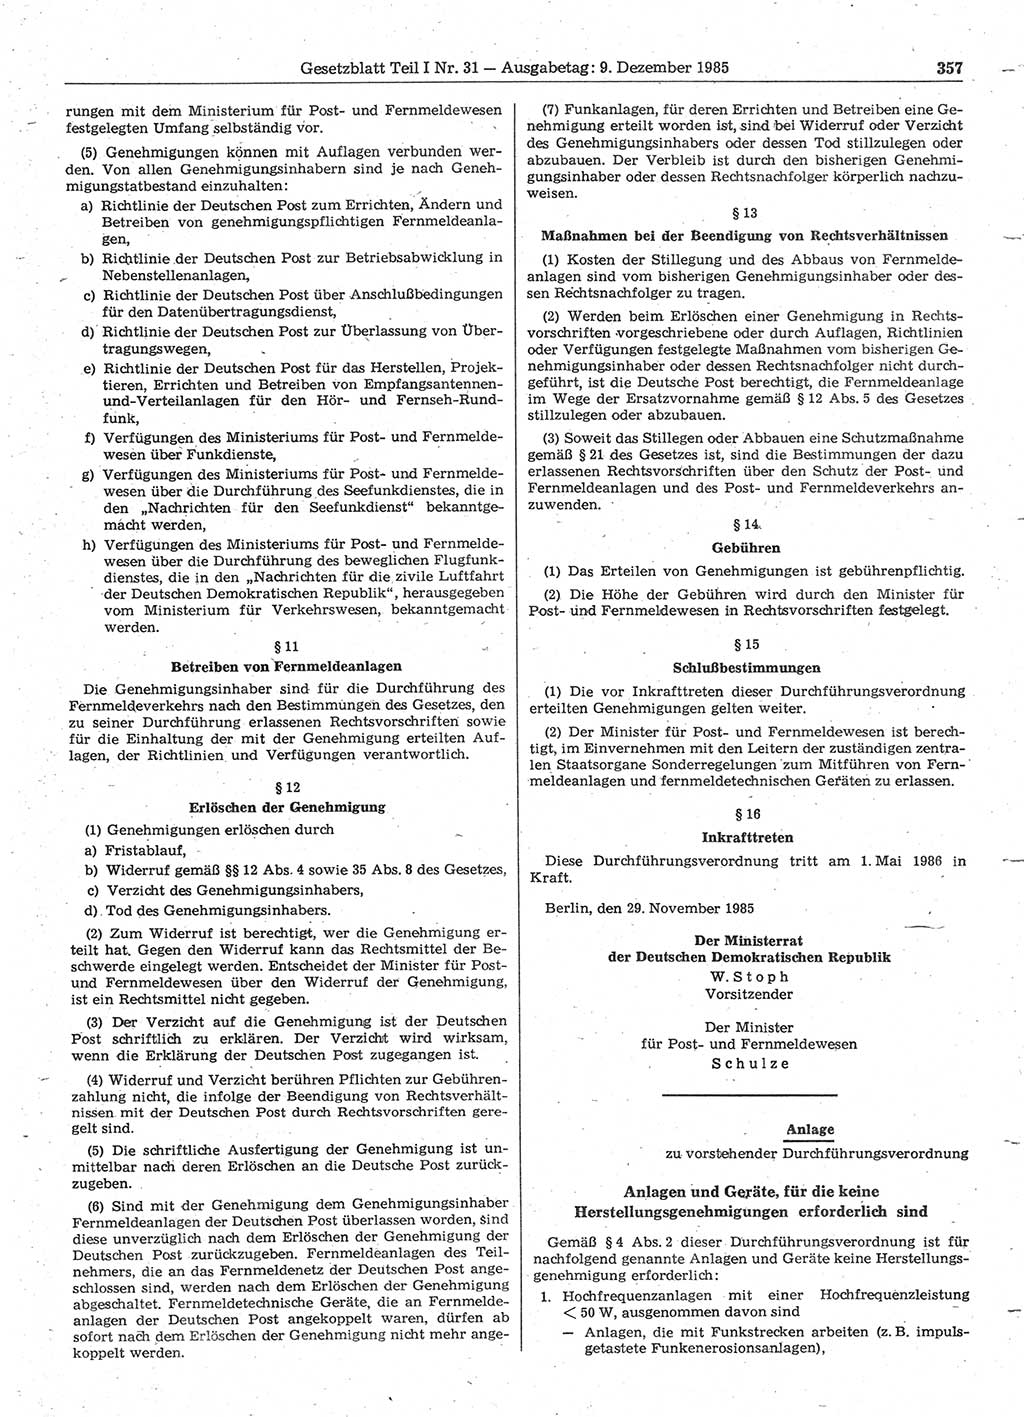 Gesetzblatt (GBl.) der Deutschen Demokratischen Republik (DDR) Teil Ⅰ 1985, Seite 357 (GBl. DDR Ⅰ 1985, S. 357)